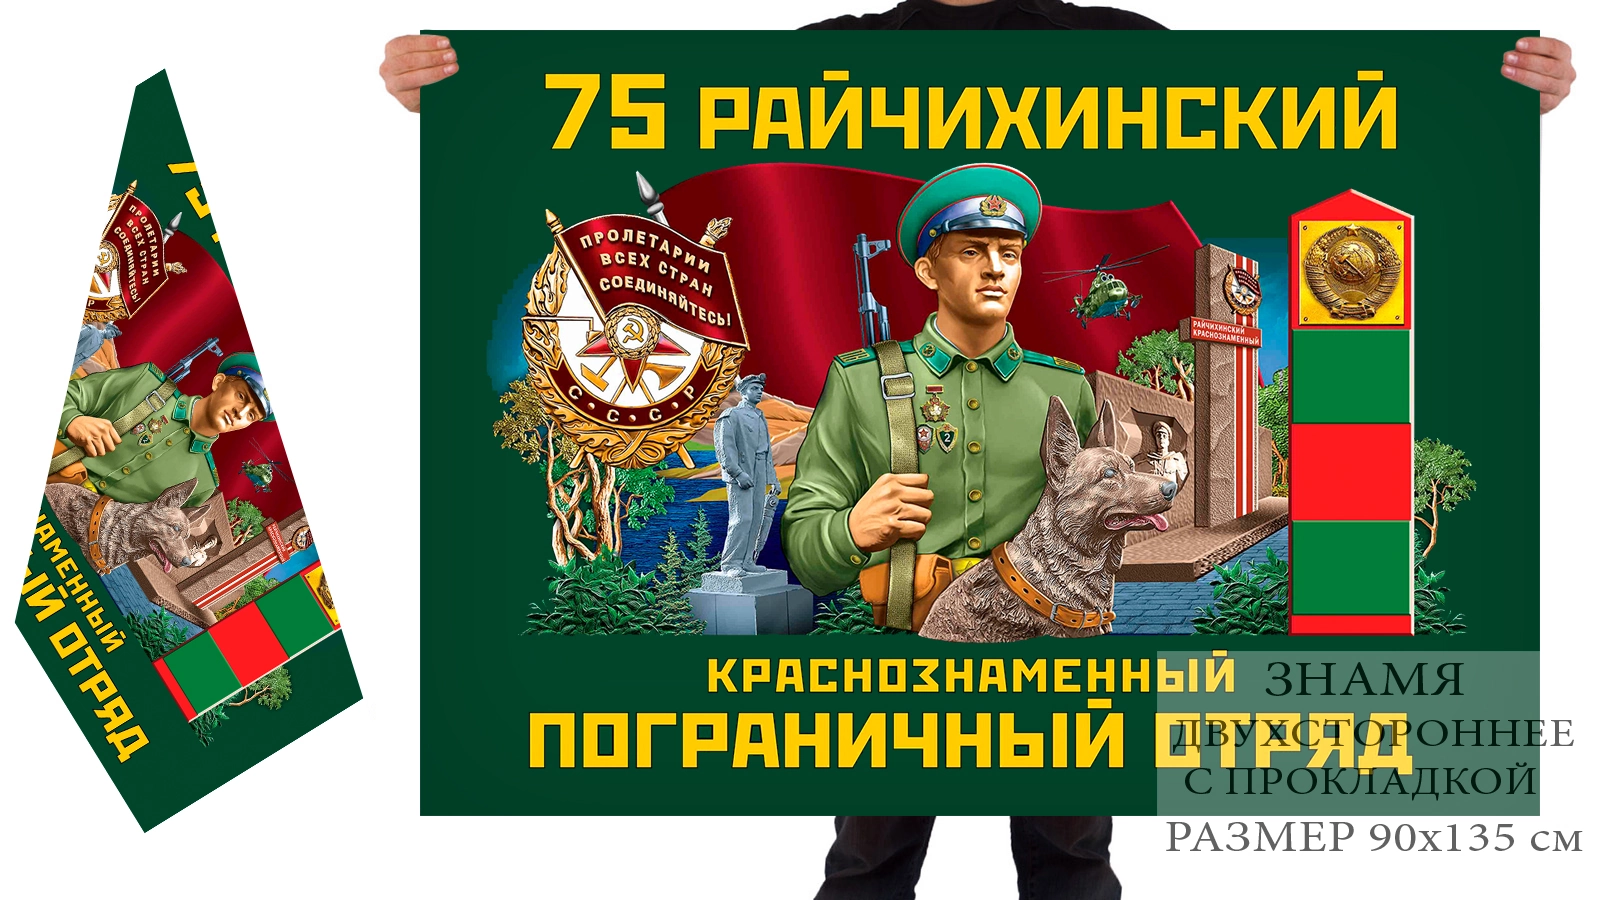 Двусторонний флаг 75 Райчихинского Краснознамённого погранотряда